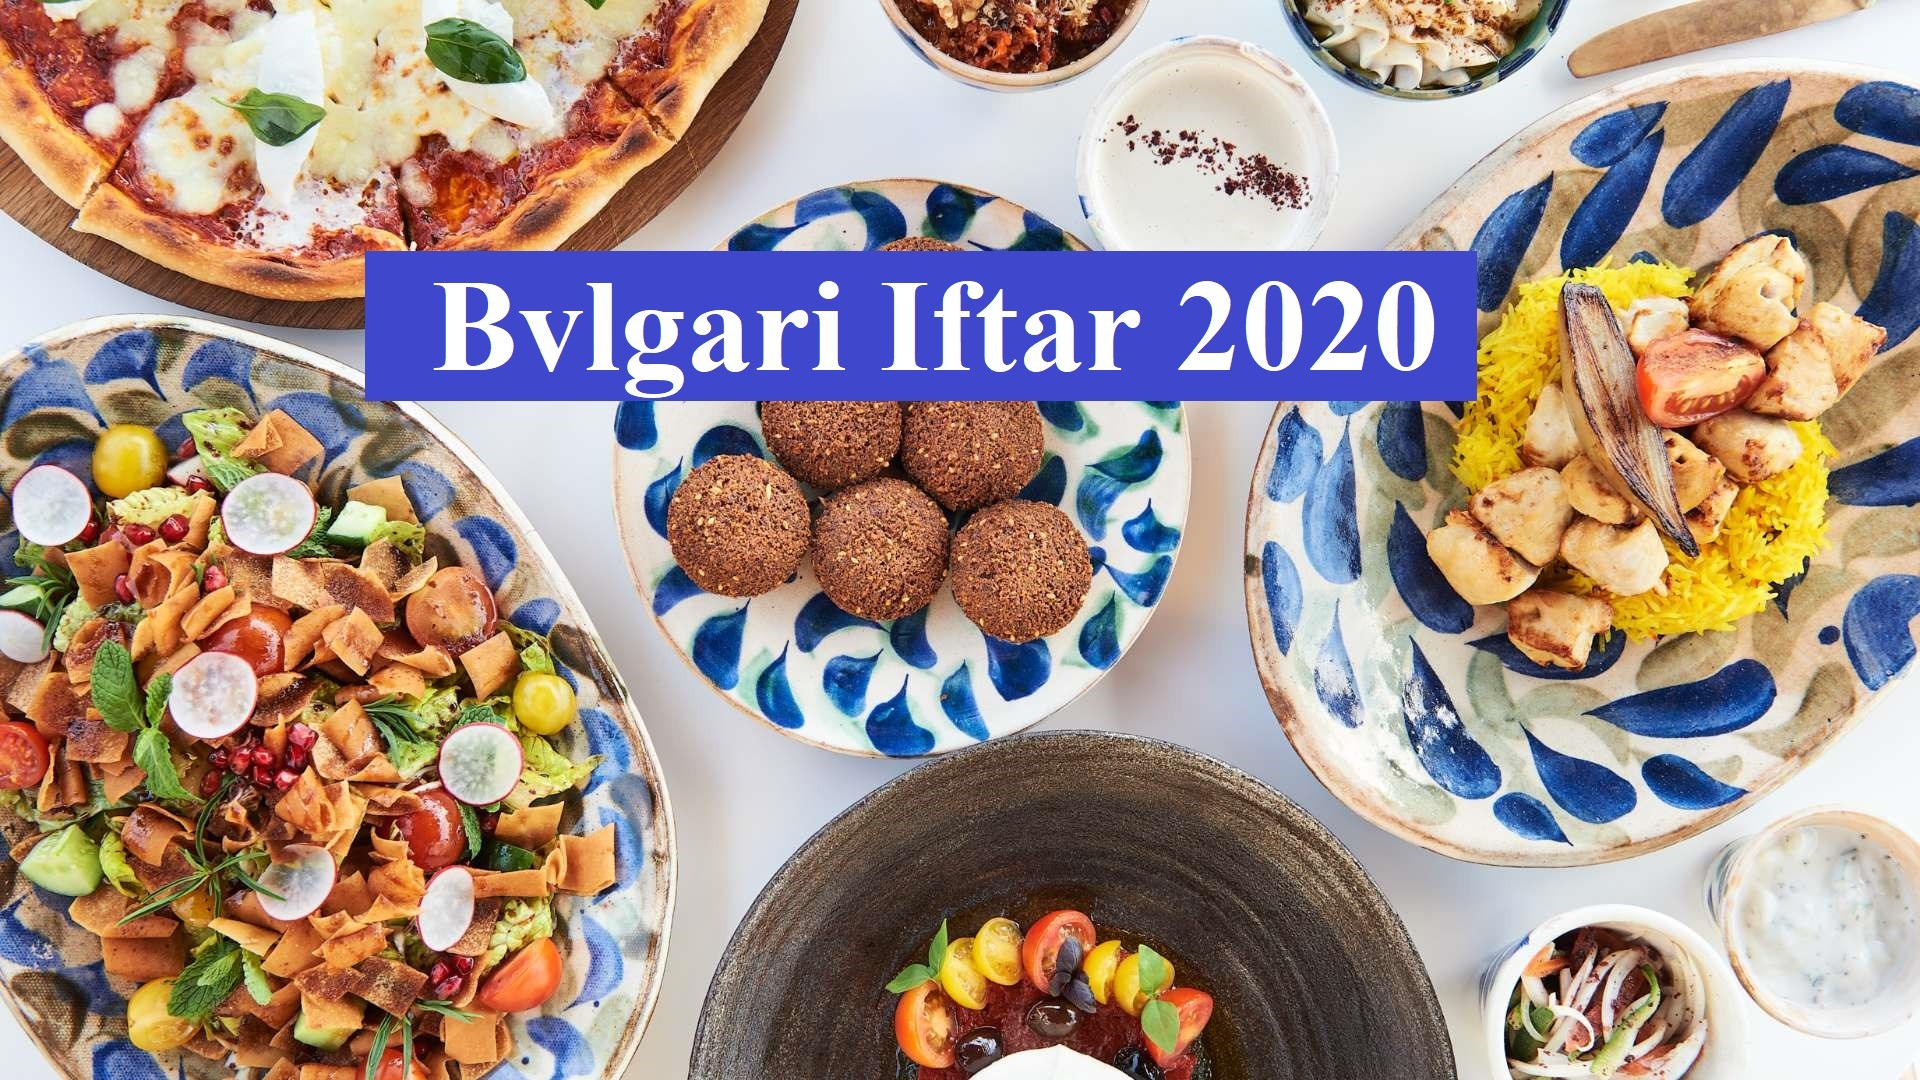 Bvlgari Iftar 2020 - Coming Soon in UAE